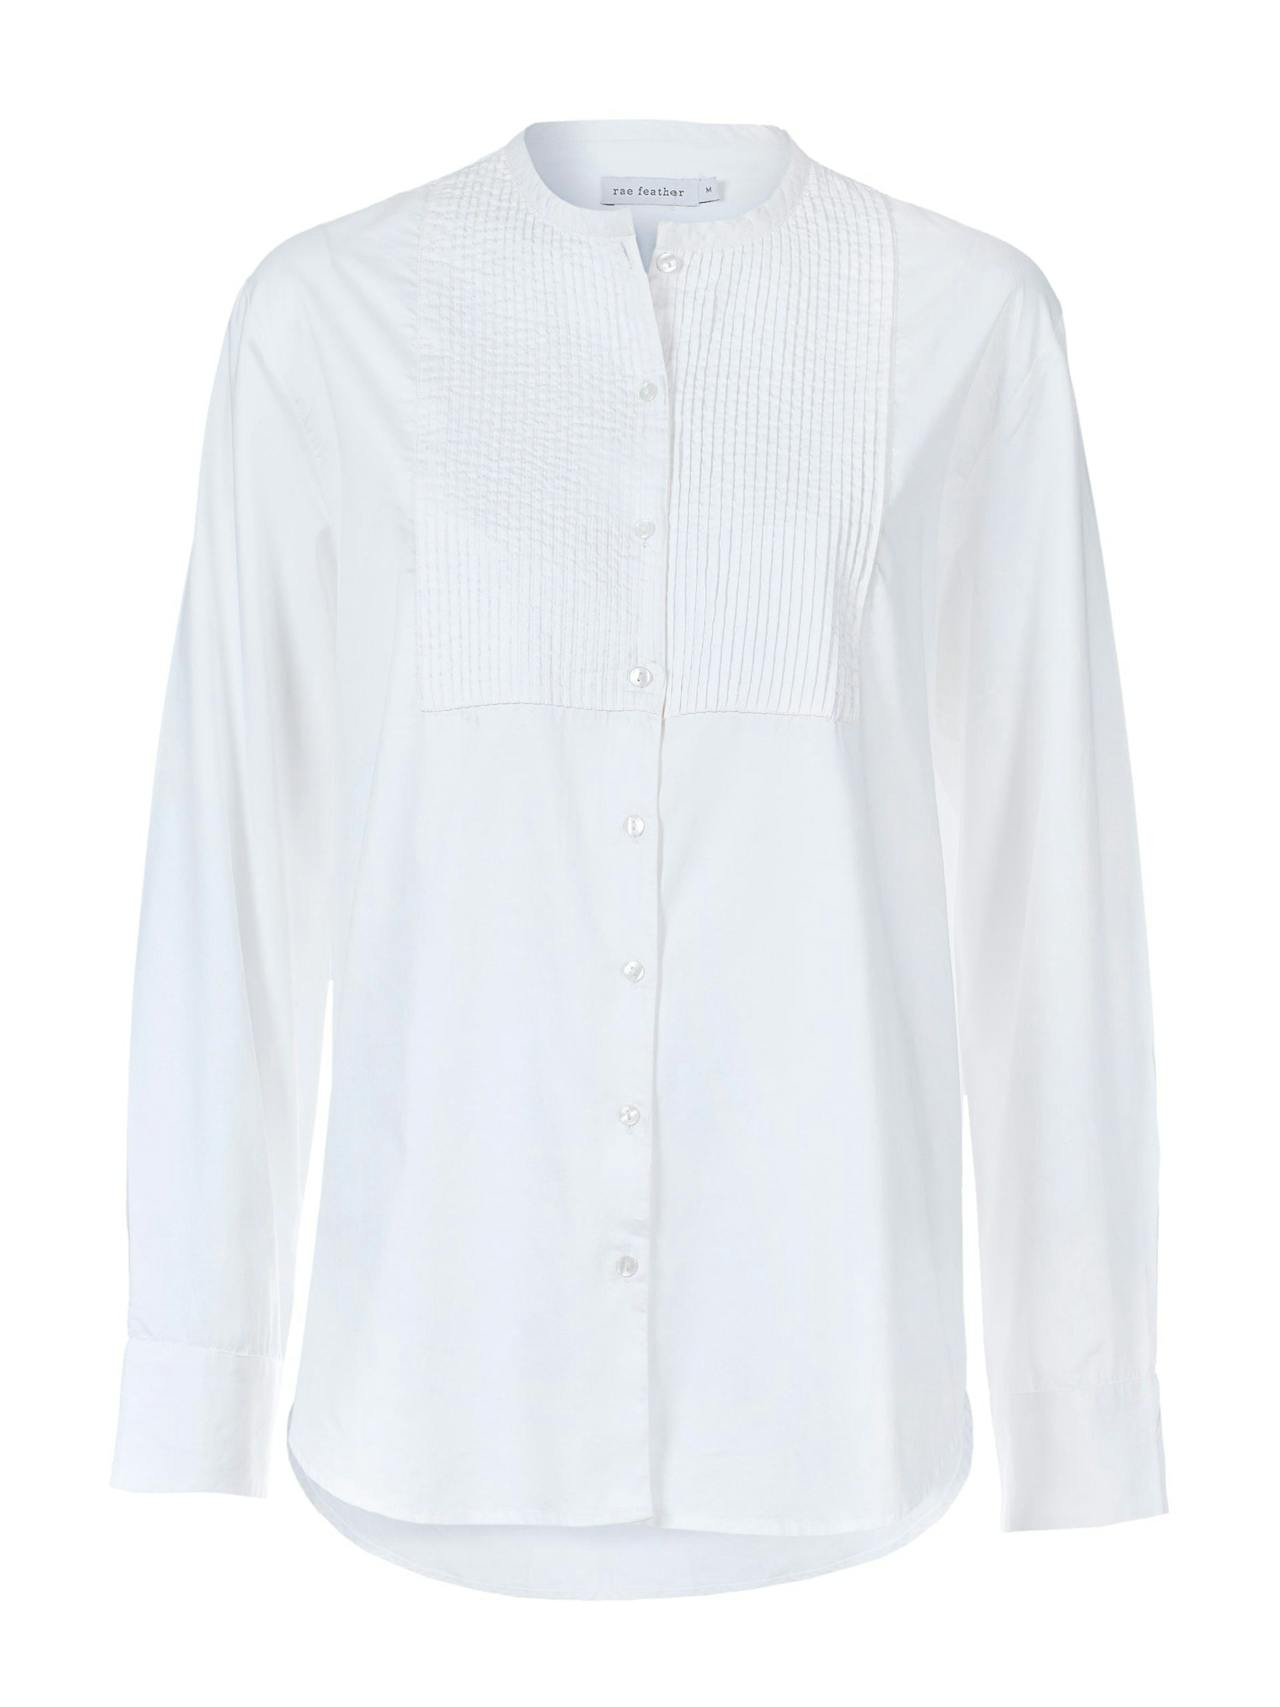 White cotton twill Dinner shirt